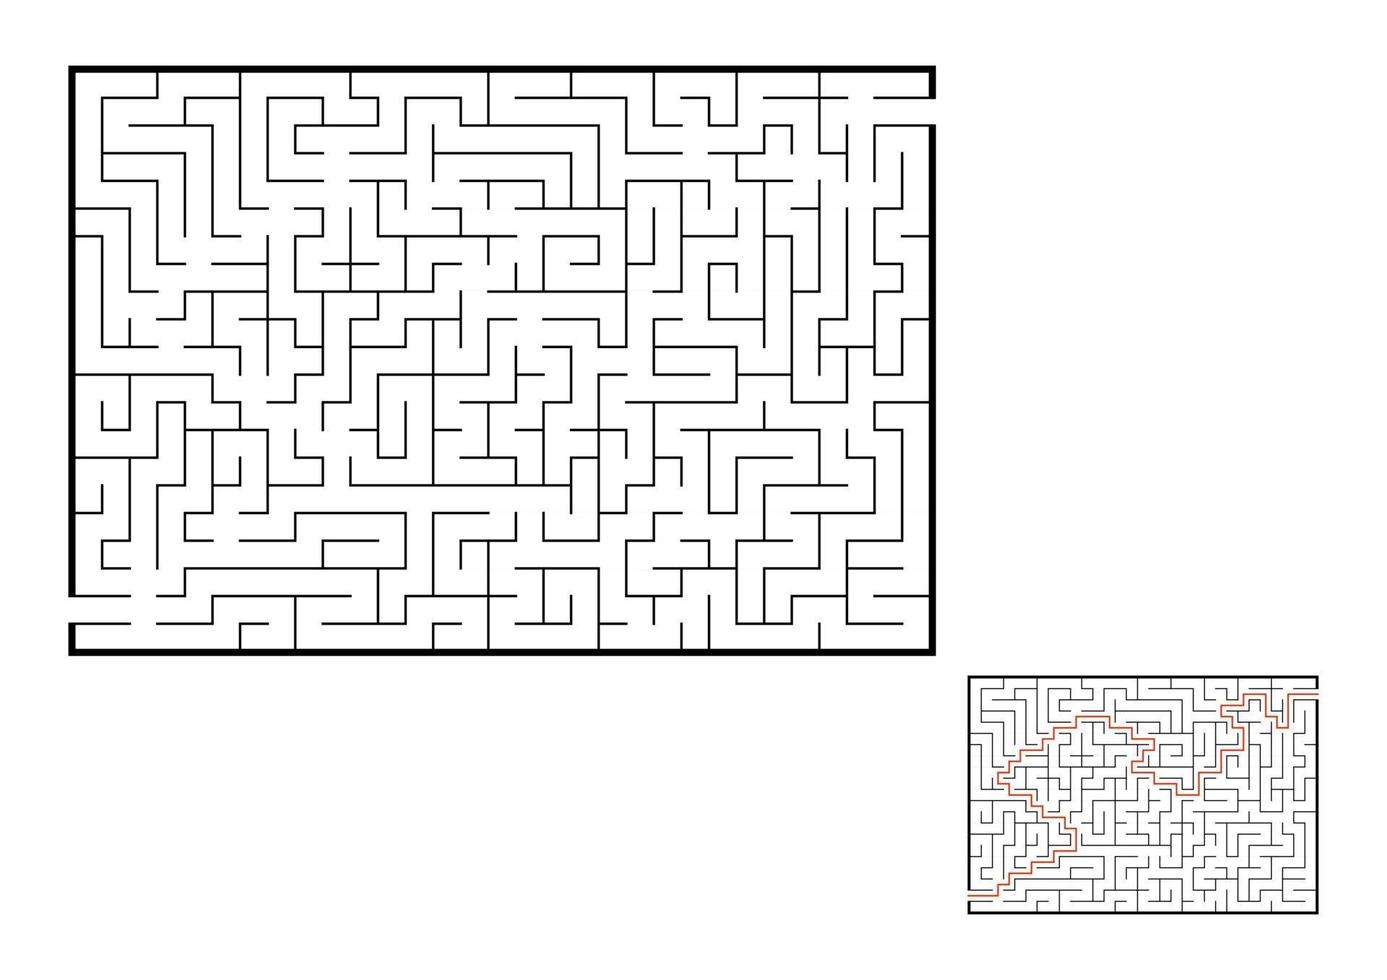 abstract rechthoekig doolhof. spel voor kinderen. puzzel voor kinderen. één ingang, één uitgang. labyrint raadsel. platte vectorillustratie geïsoleerd op een witte achtergrond. met antwoord. vector